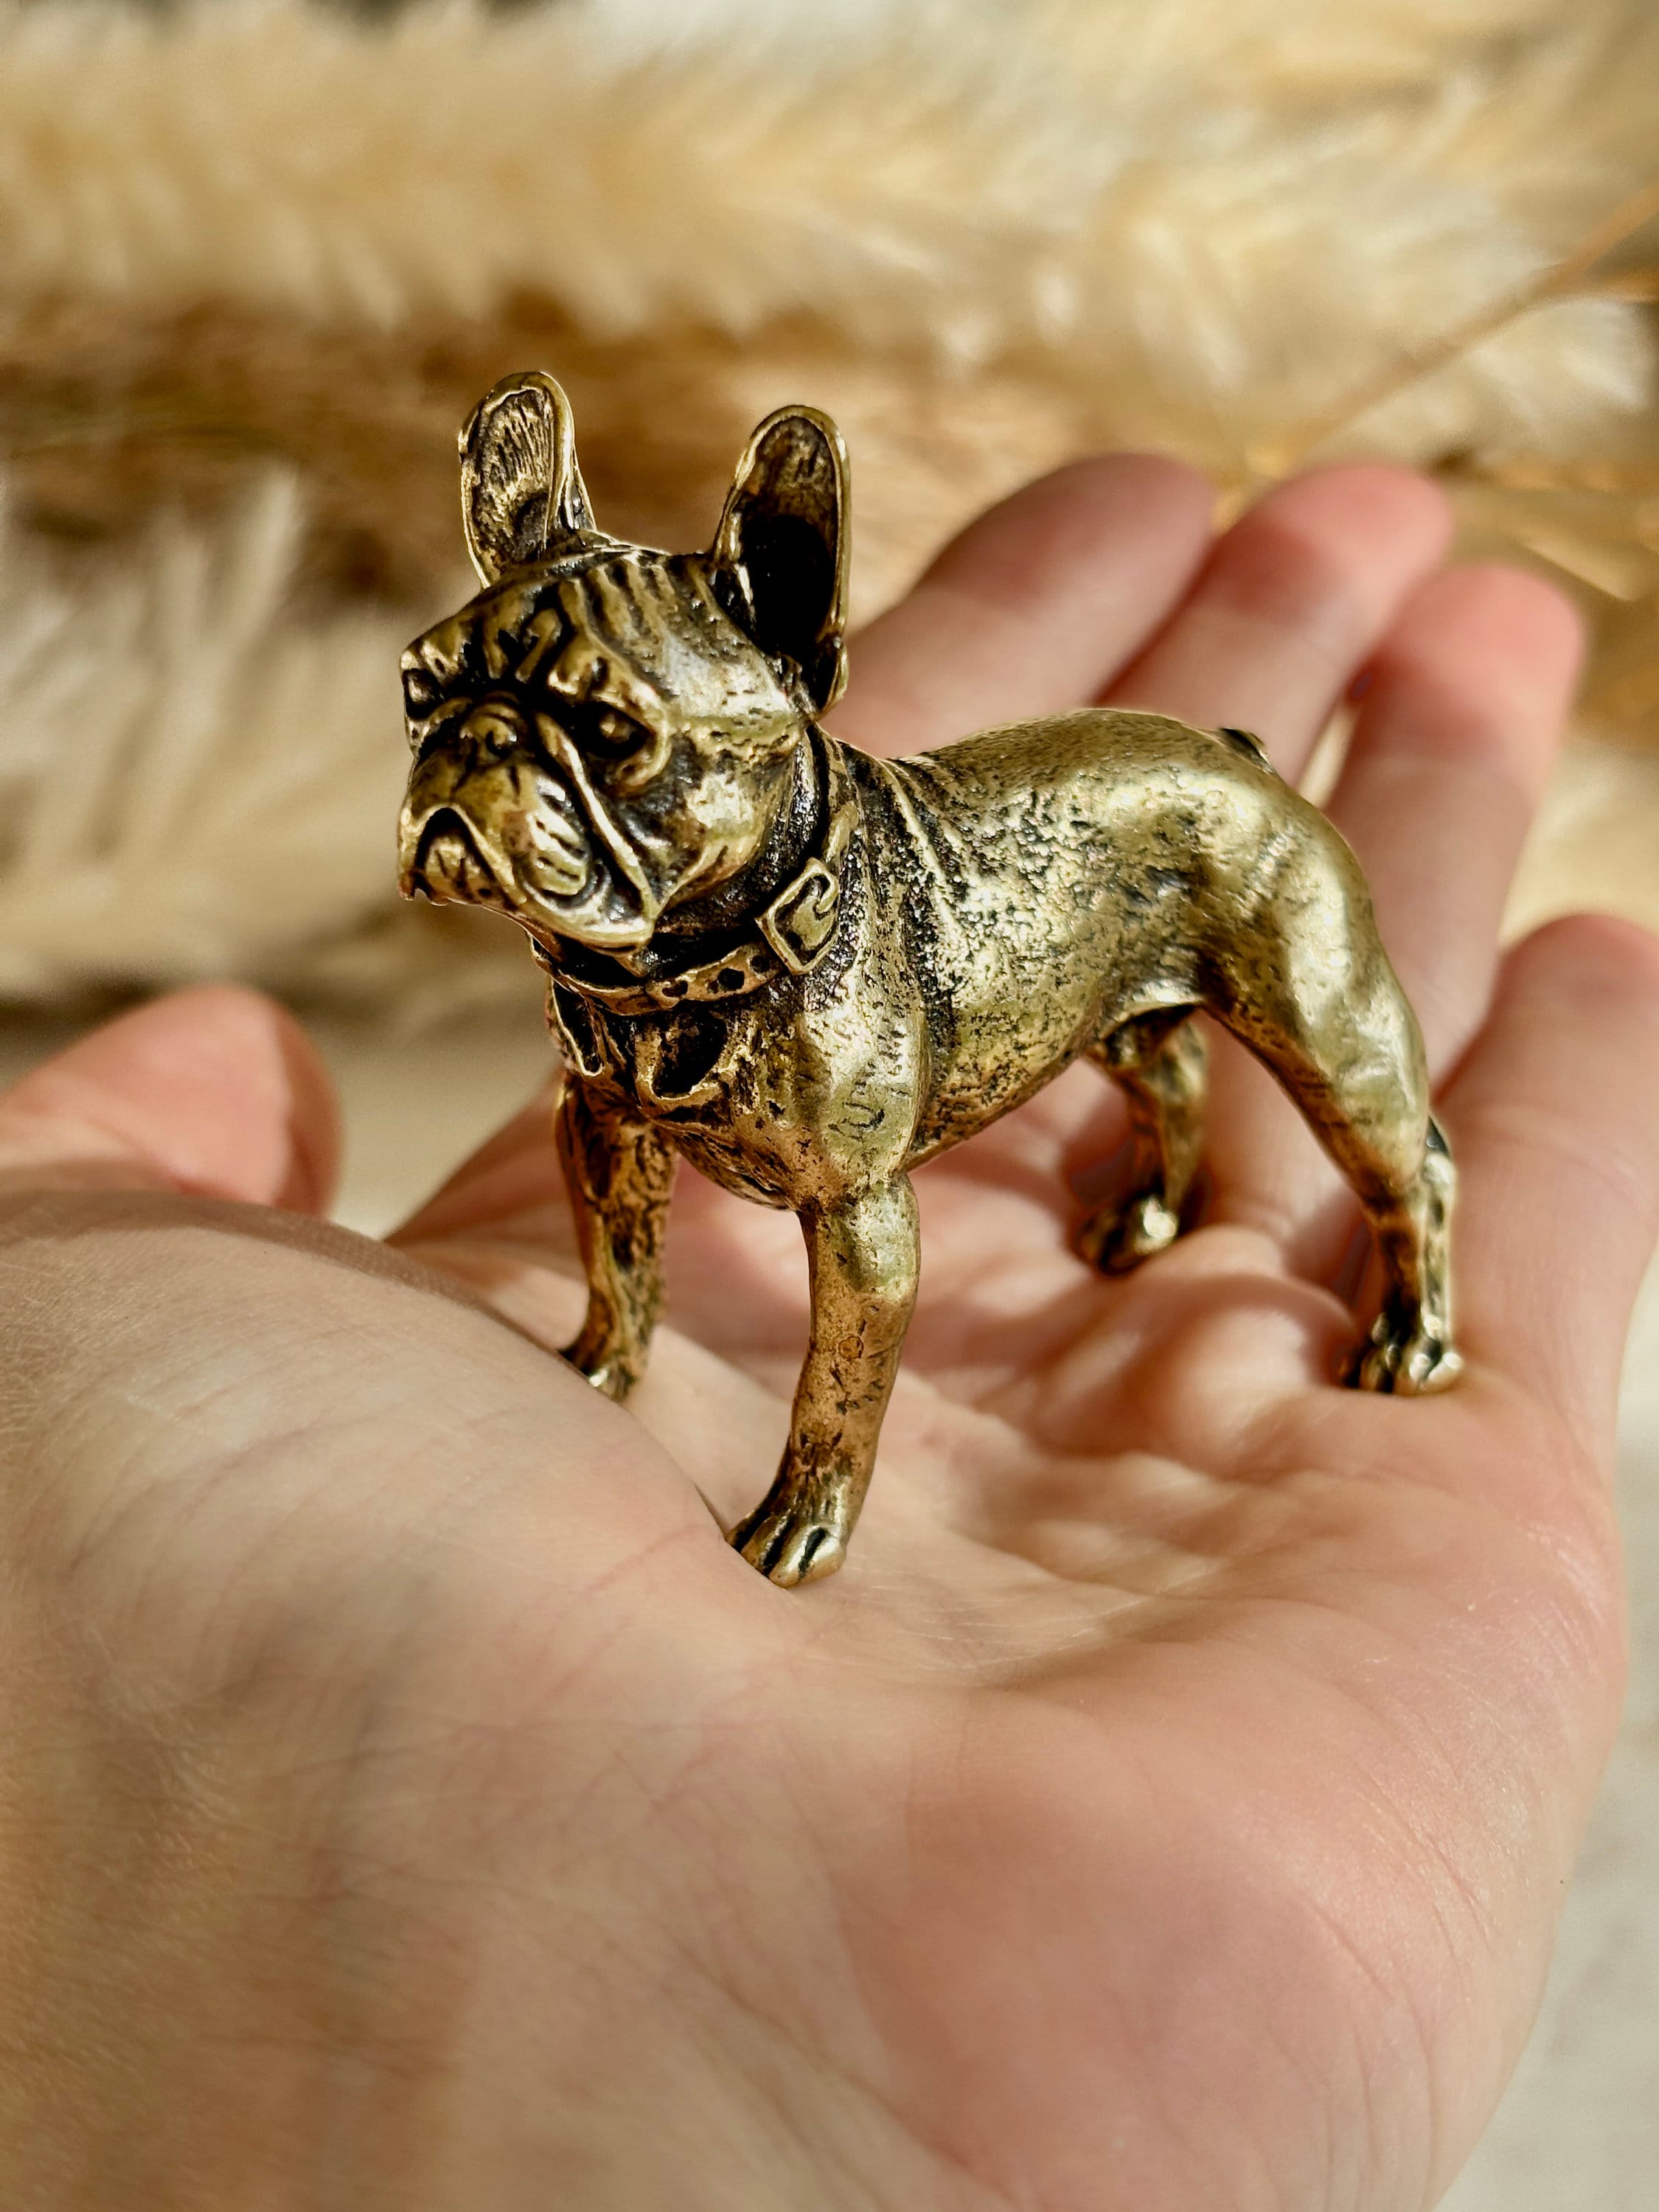 Deko Hund Figur englische Bulldogge gold günstig kaufen